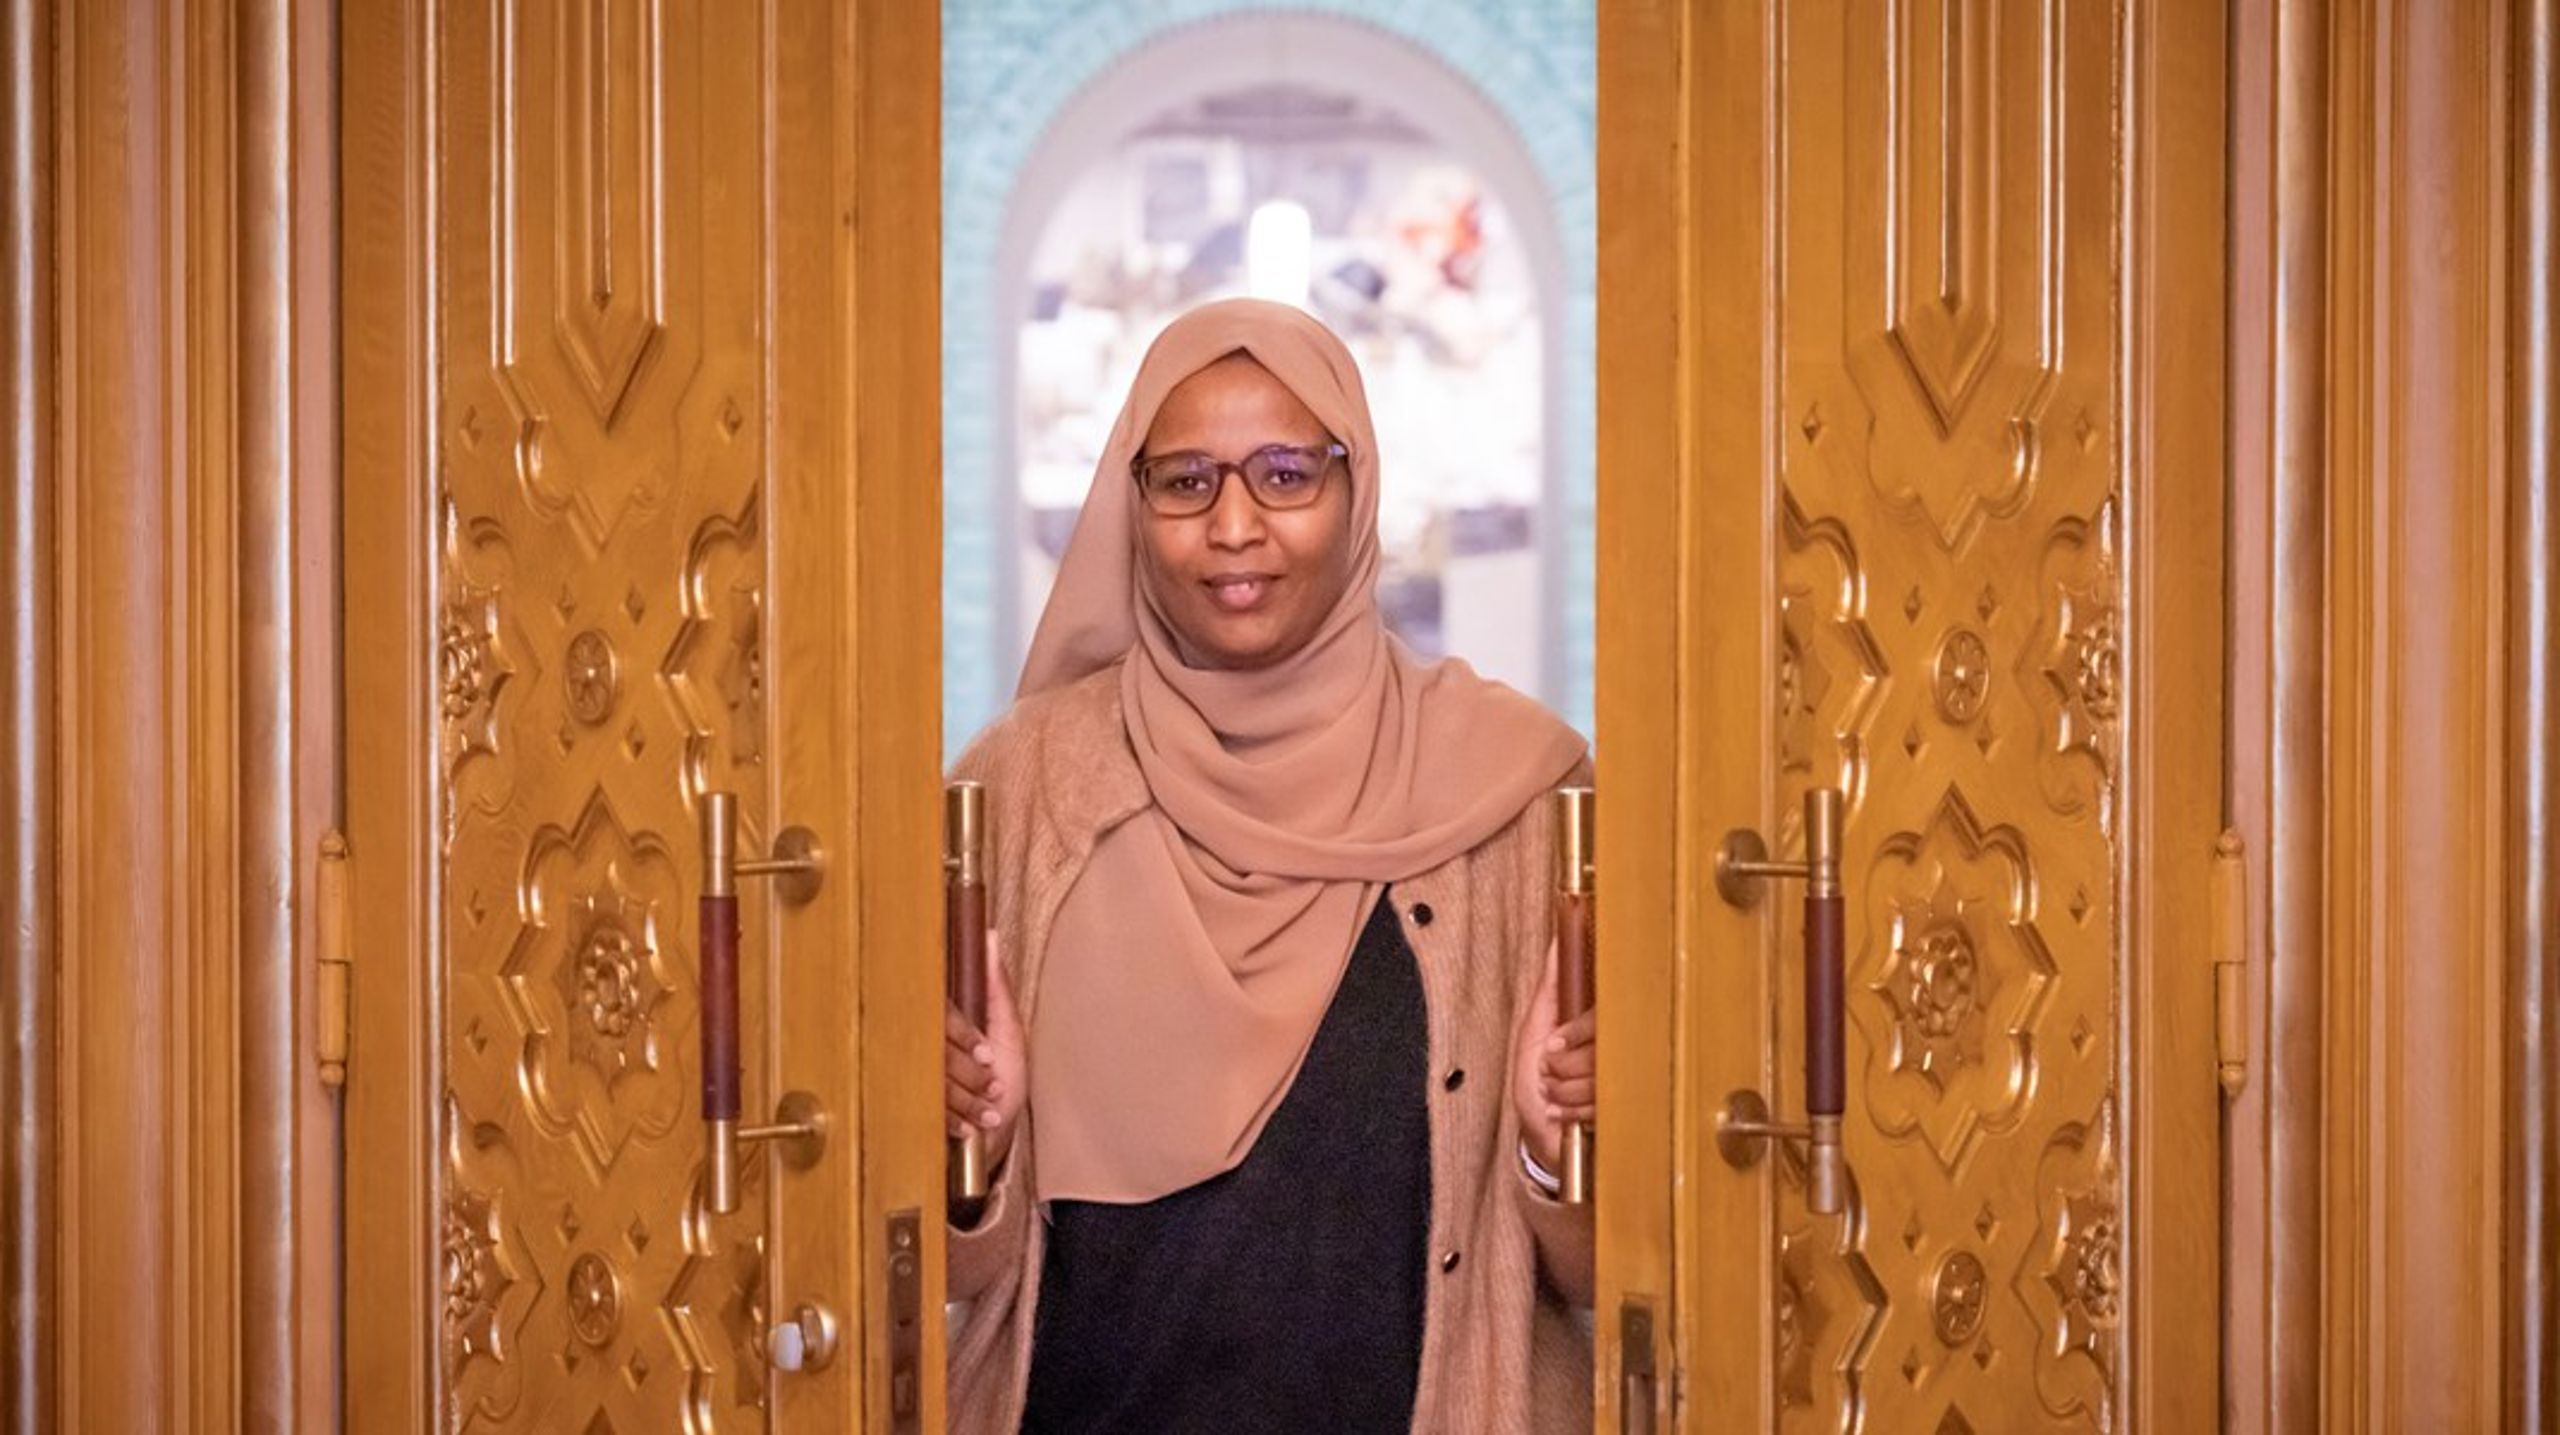 Nestleder i Sosialistisk Venstreparti, Marian Hussein, er født i Somalia og ble valgt inn på Stortinget i 2021. Hun&nbsp;er den første stortingsrepresentanten med afrikansk bakgrunn og den første som bruker hijab.&nbsp;